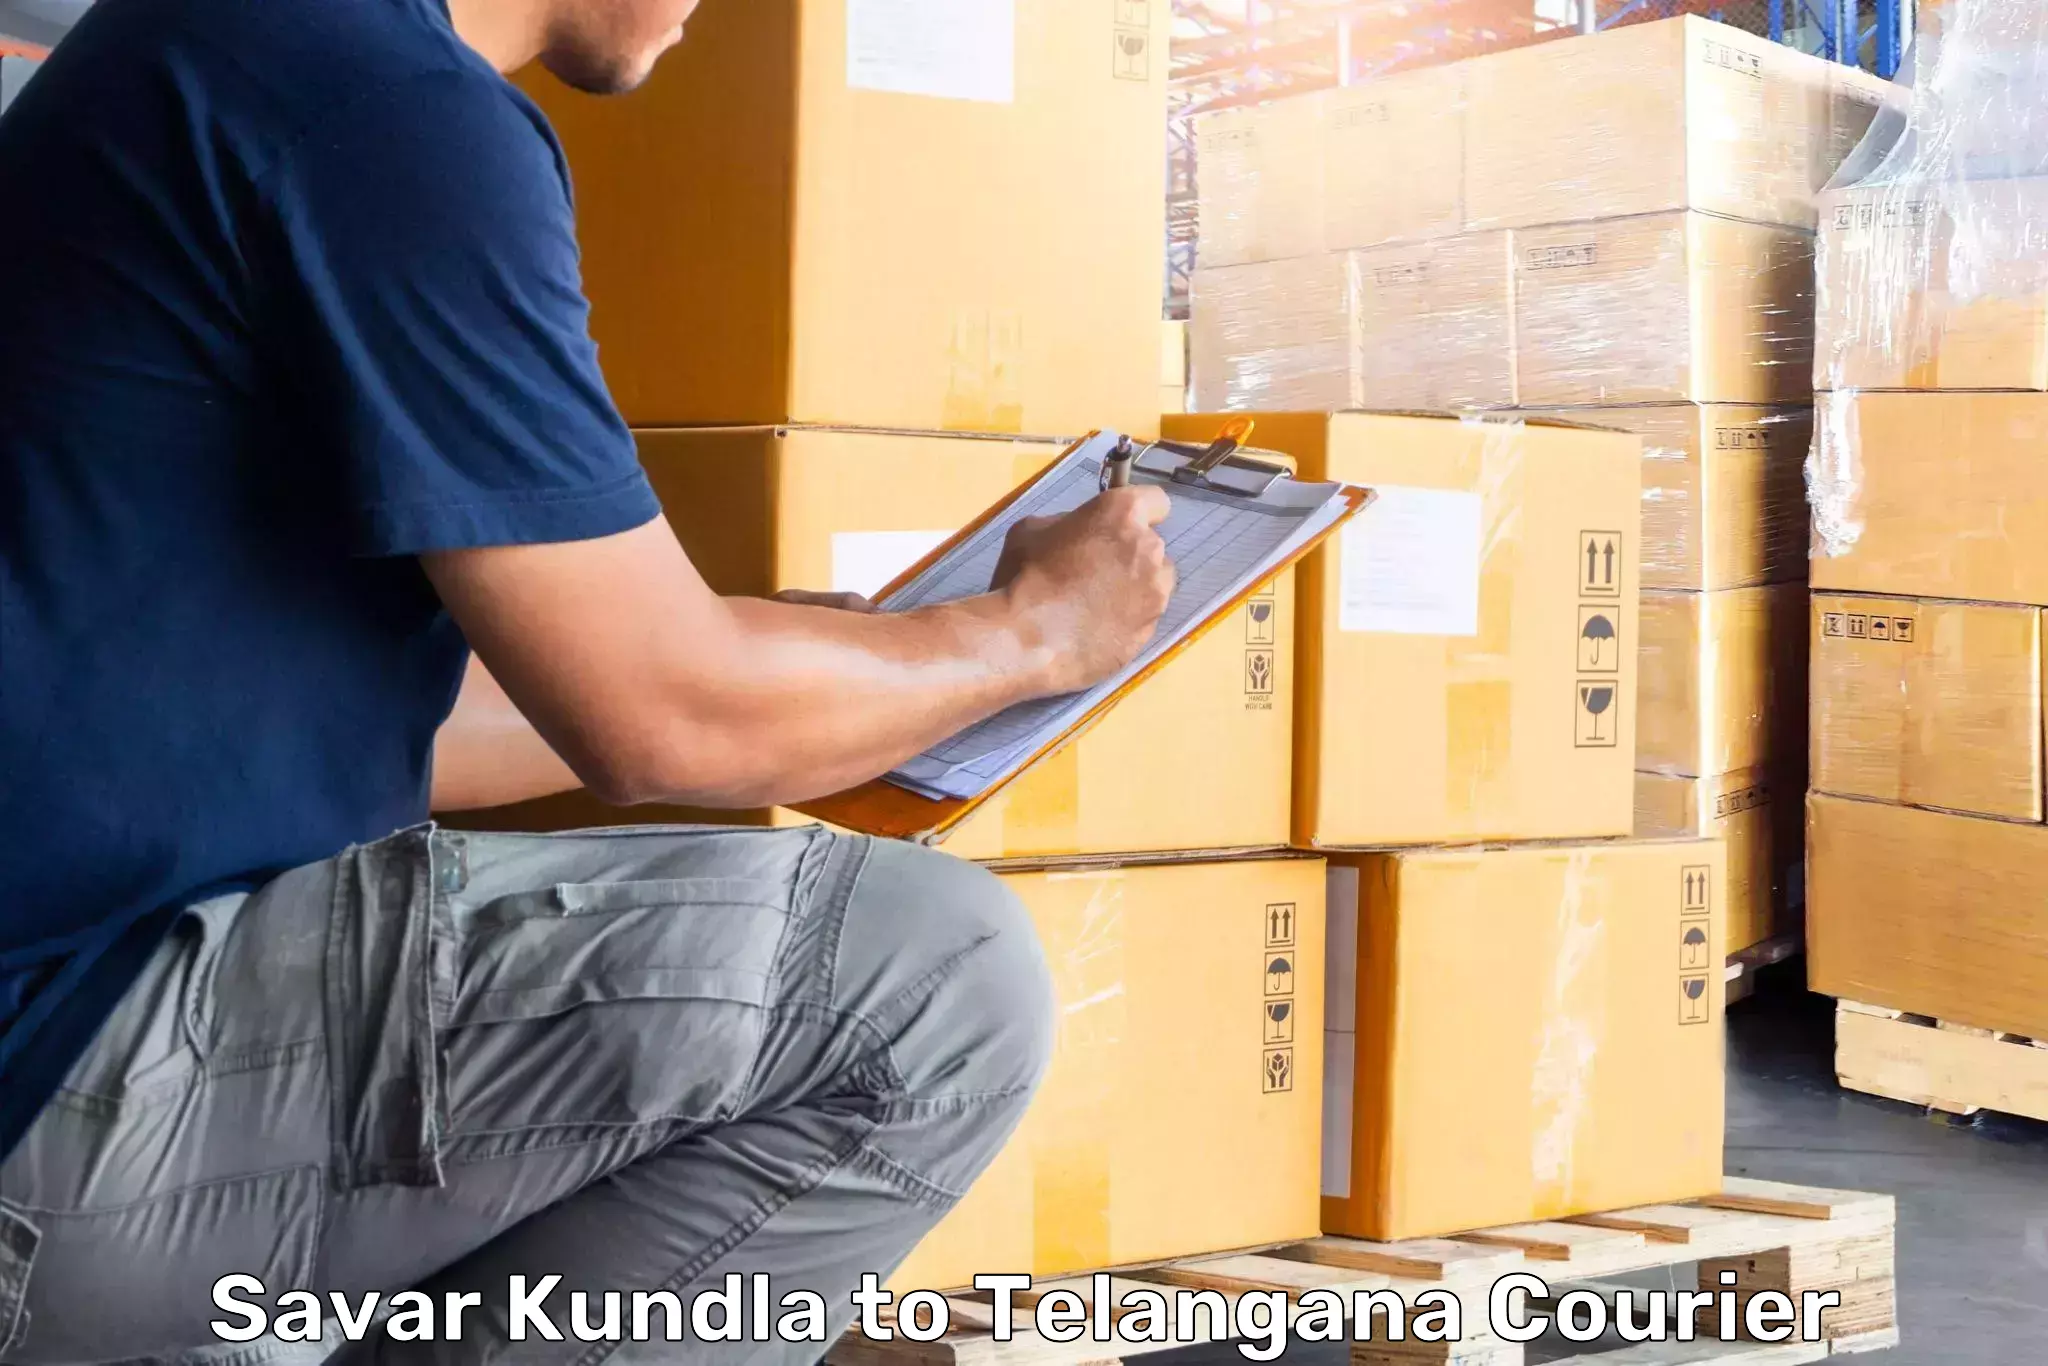 Comprehensive baggage service Savar Kundla to Kalwakurthy